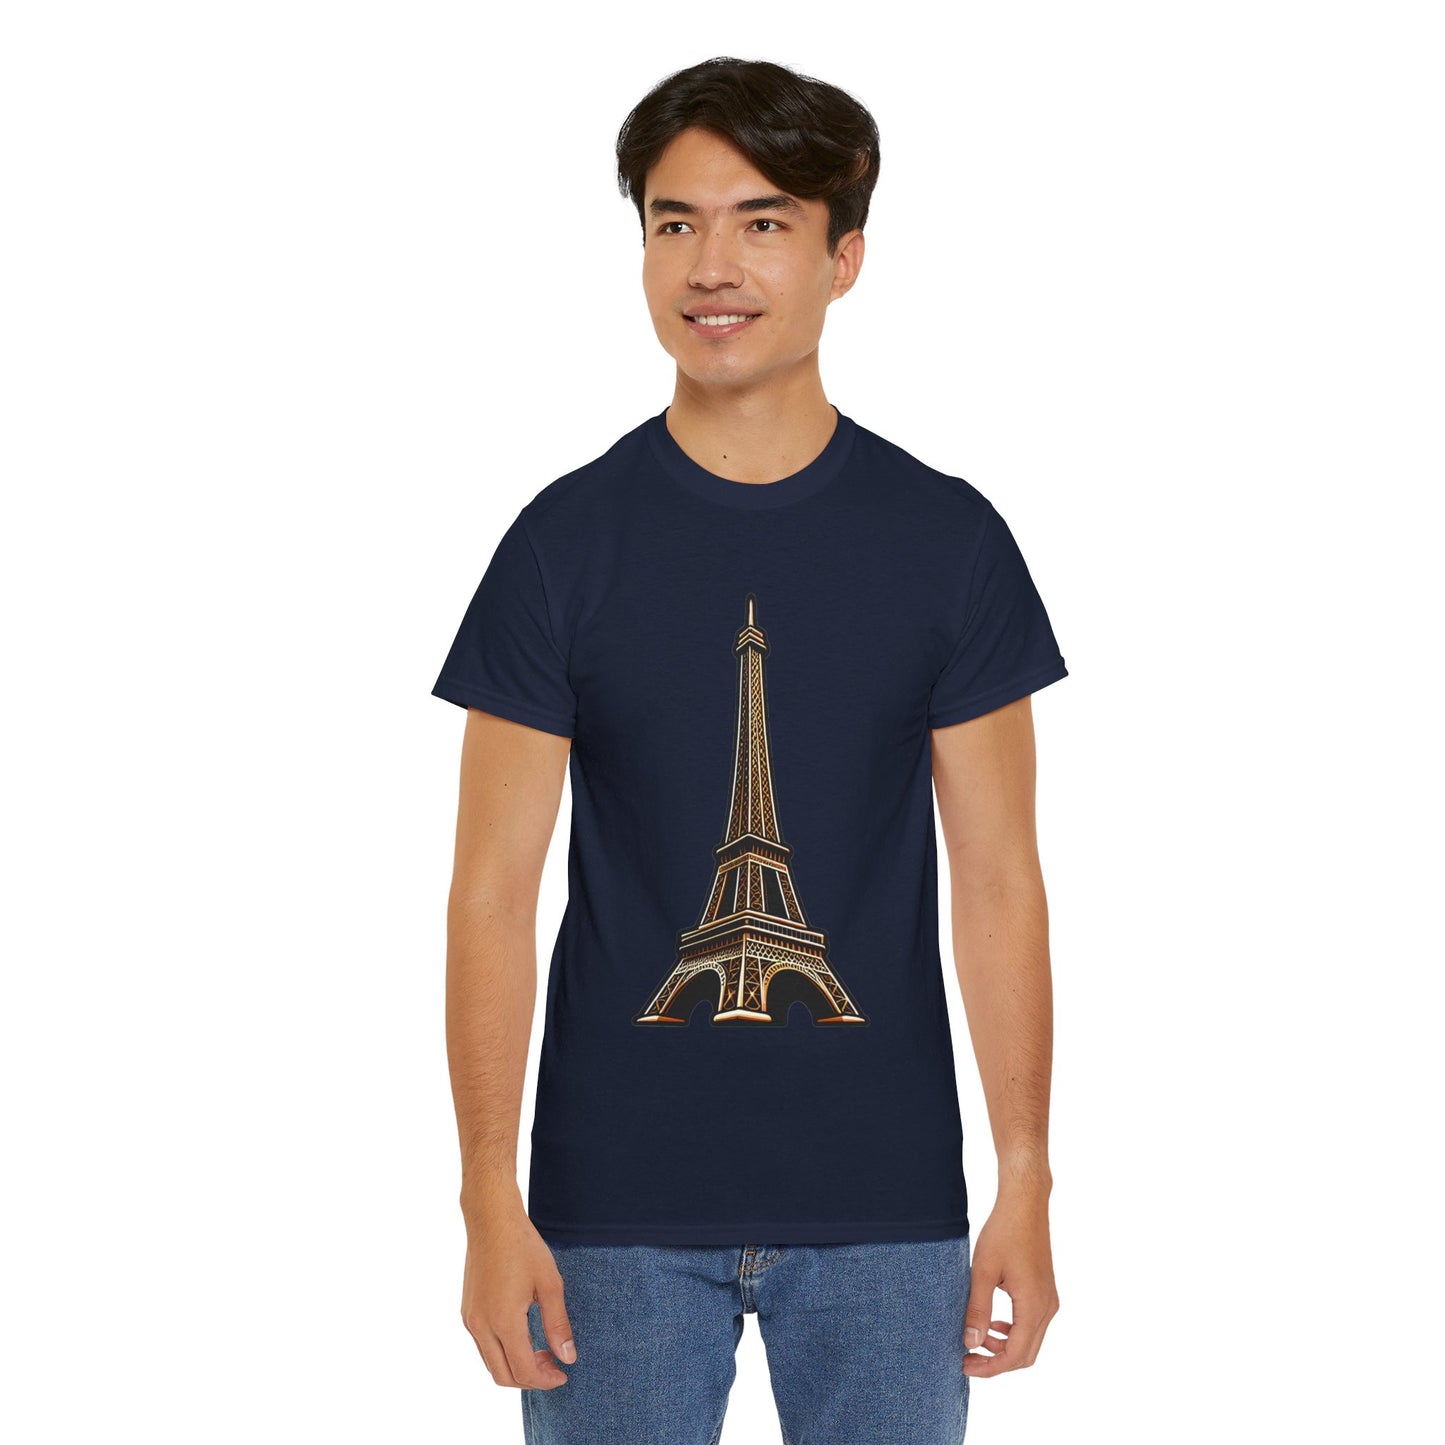 The Eiffel Tower Unisex Heavy Cotton Tee